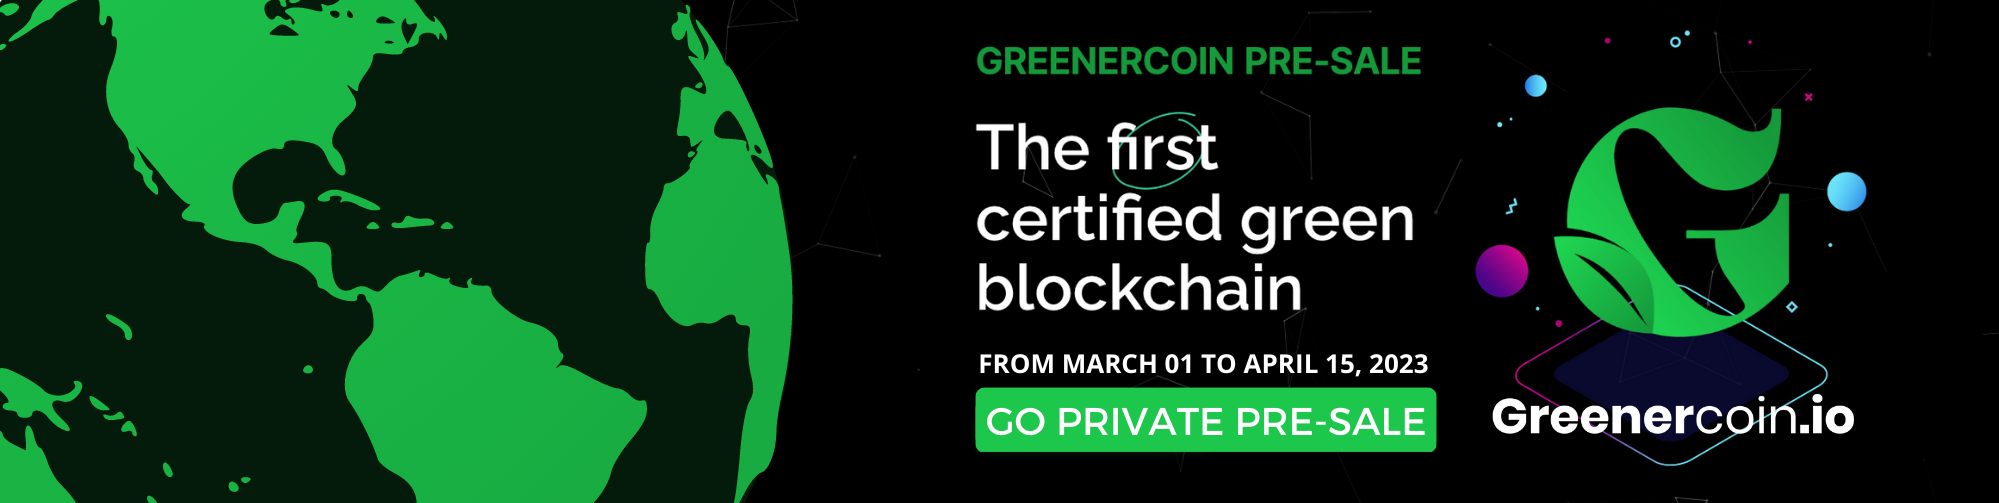 https://www.greenercoin.io/private-pre-sale/